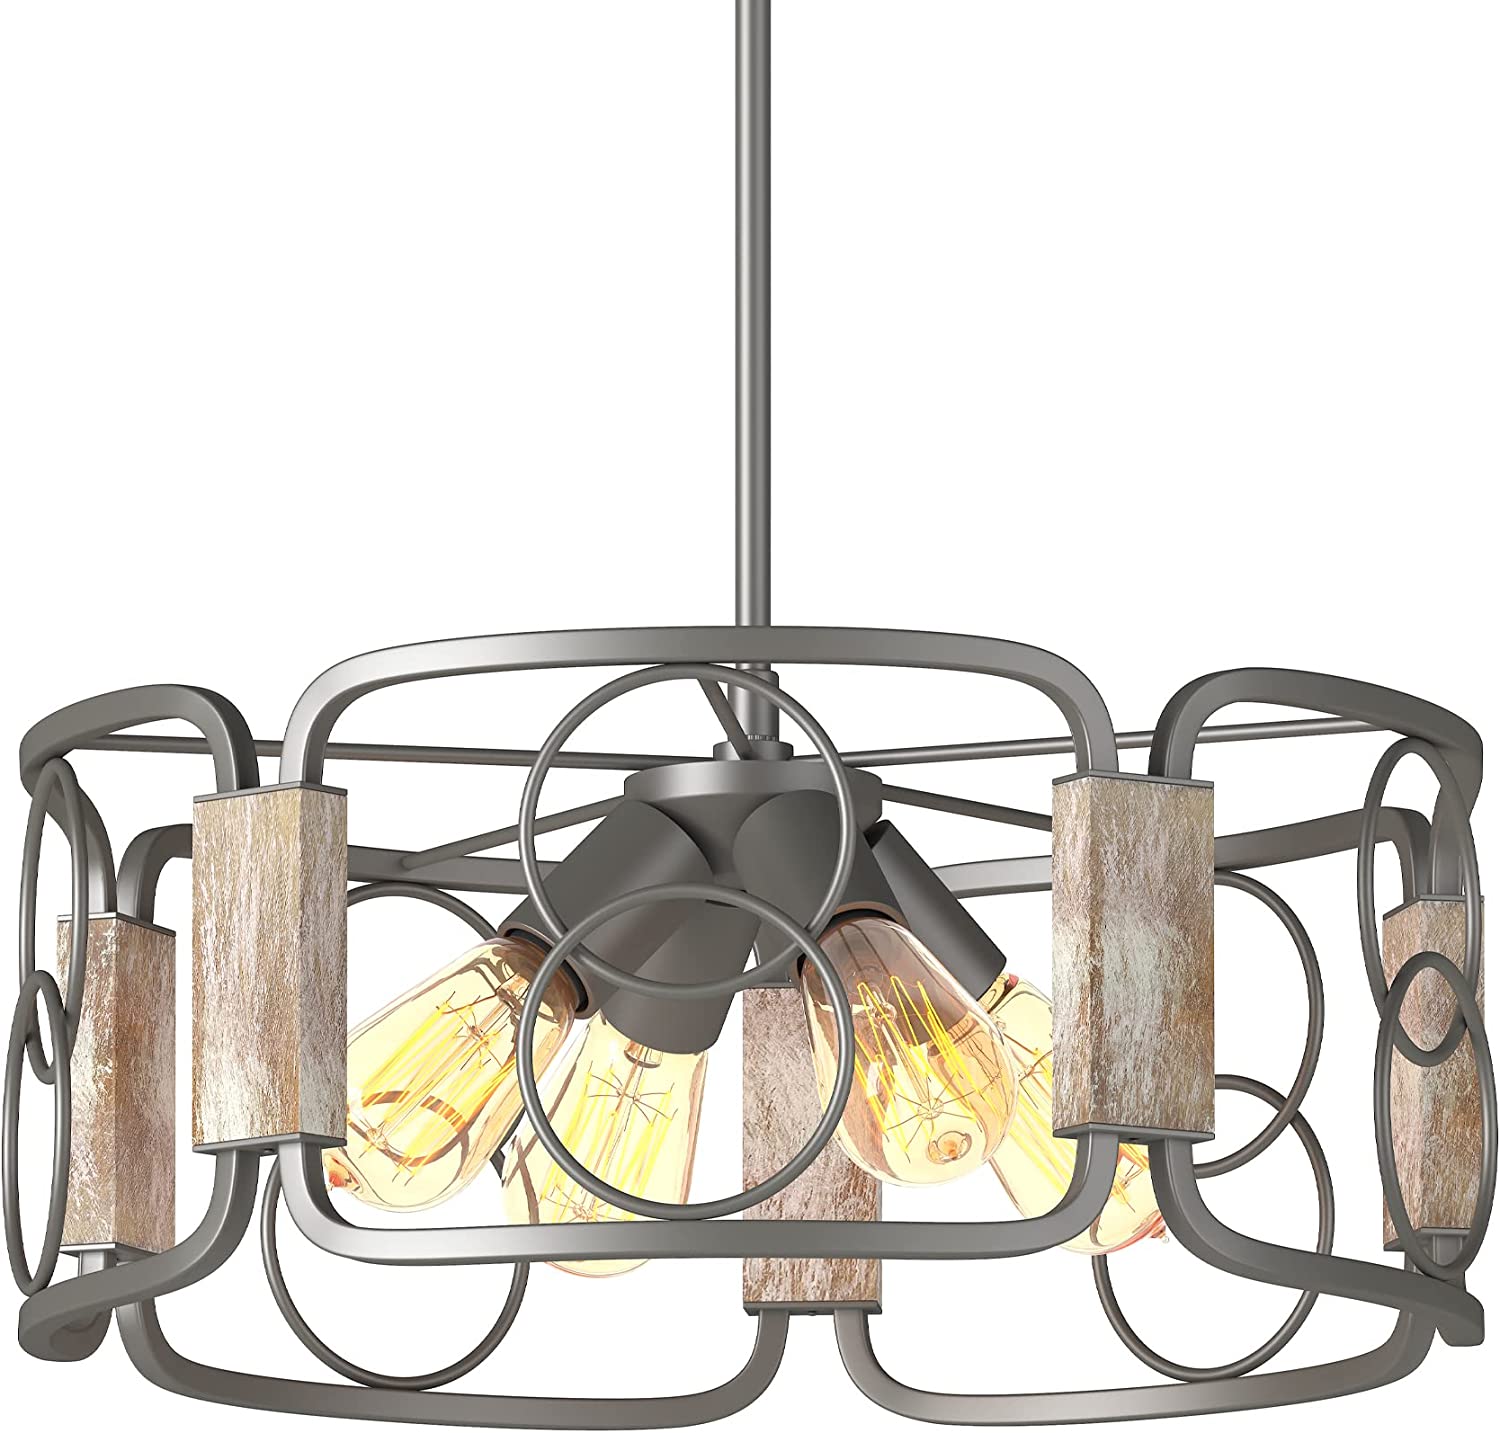 4 light farmhouse industrial chandelier wood accents drum pendant light